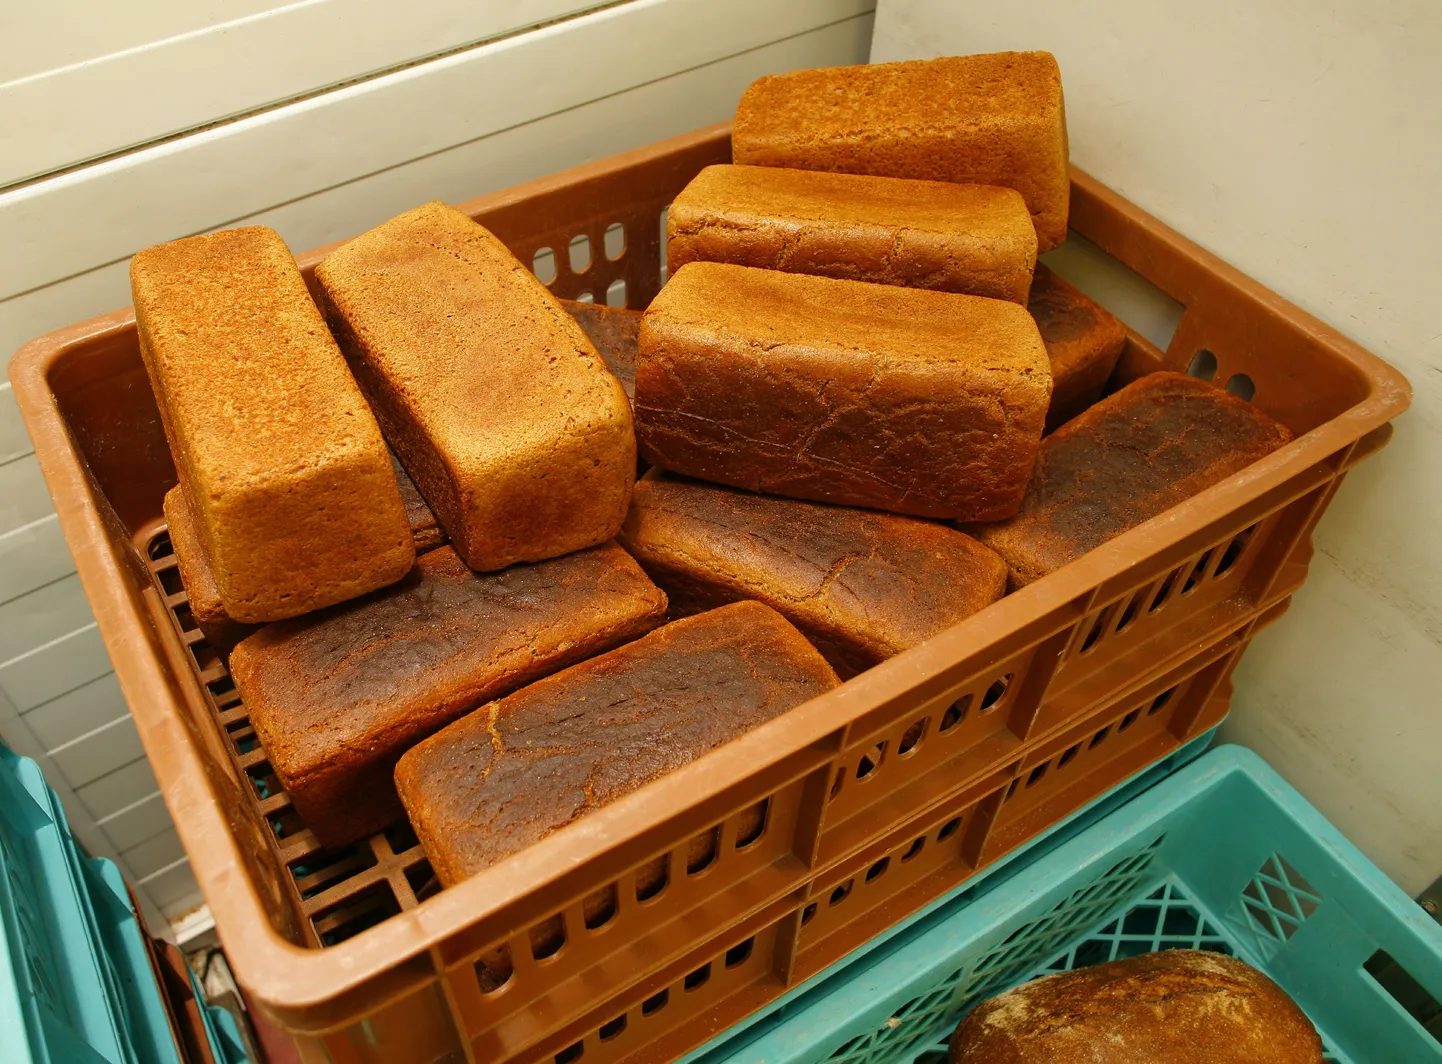 Populaarset Pärnu leiba müügilettidelt praegu ei leia.